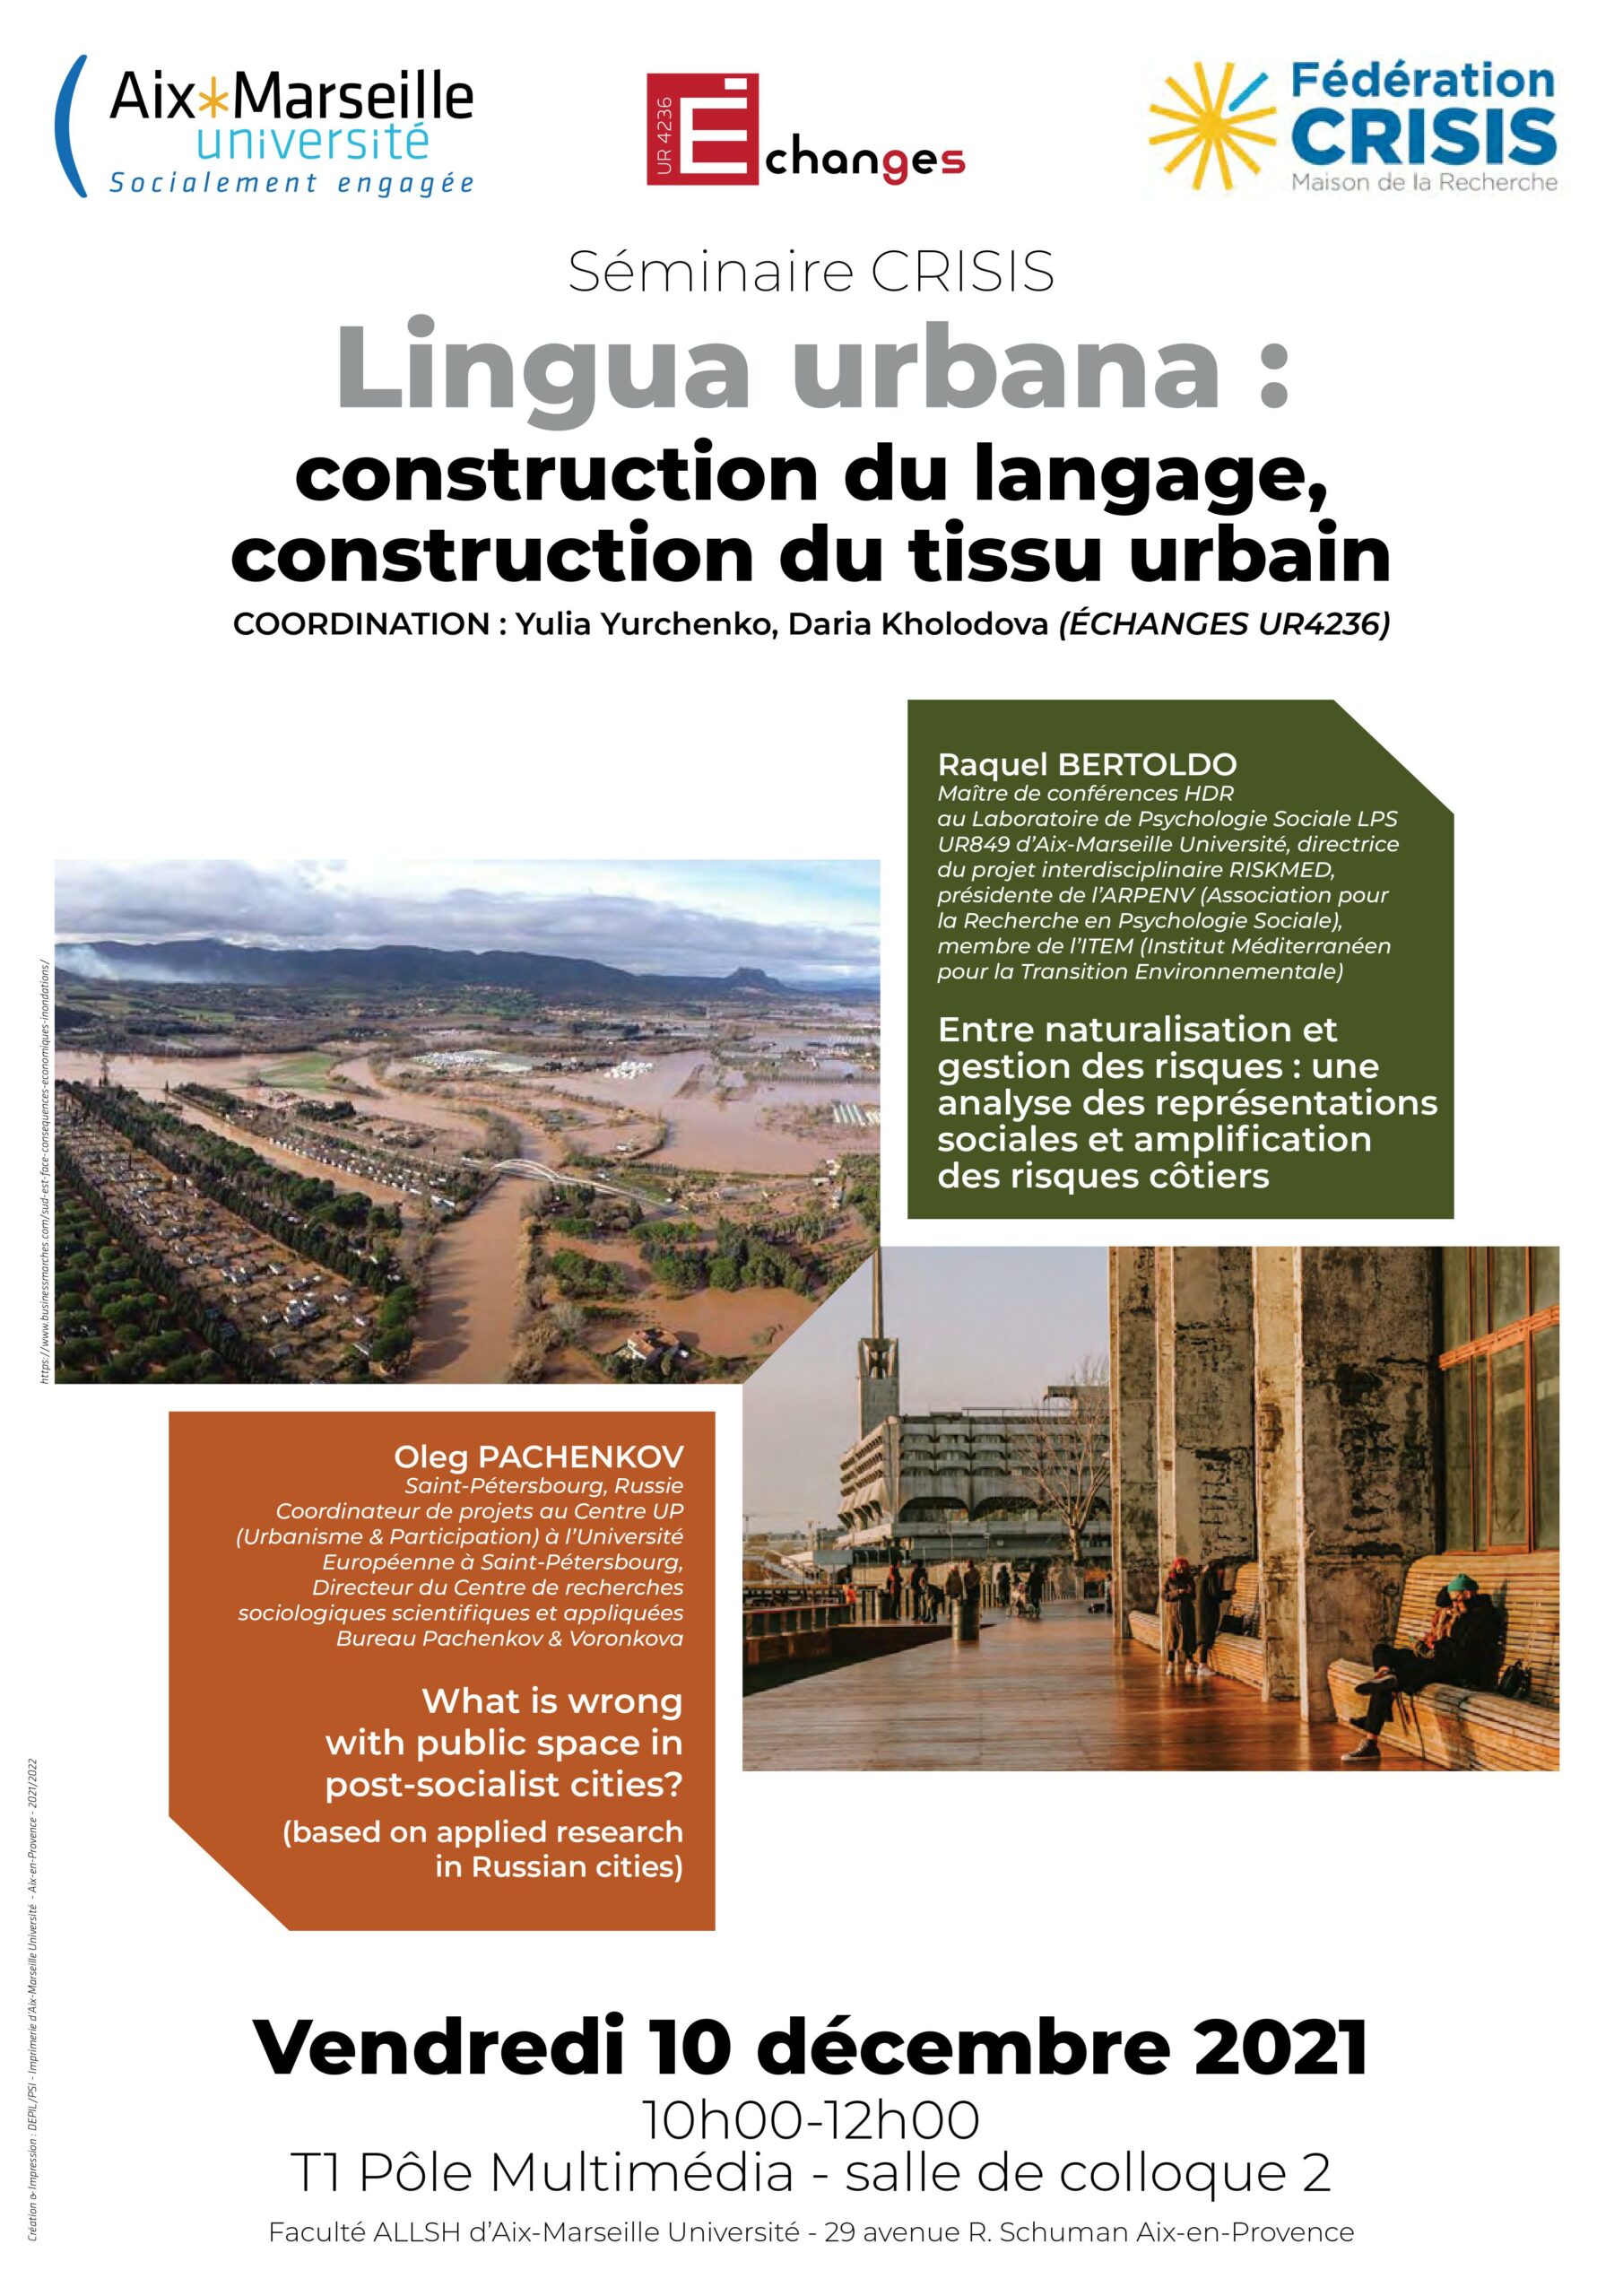 La 2e séance du séminaire CRISIS  » Lingua urbana : construction du langage, construction du tissus urbain « 